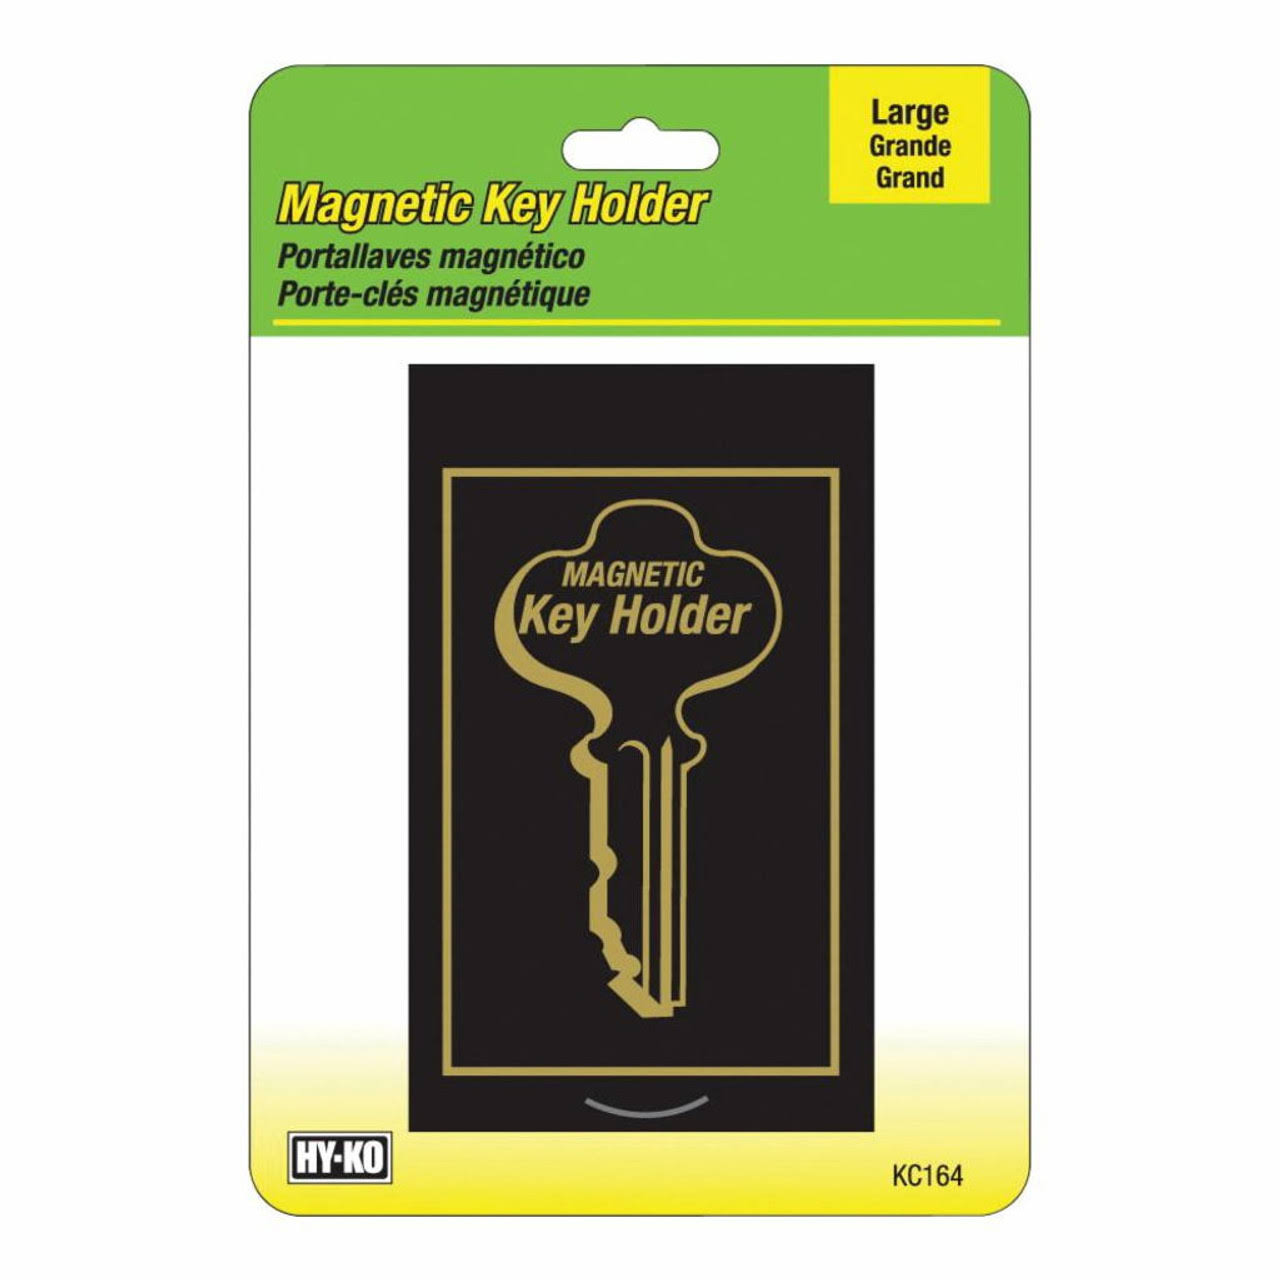 Hy-Ko Large Secret Hide-A-Key Magnetic Key Holder - Black